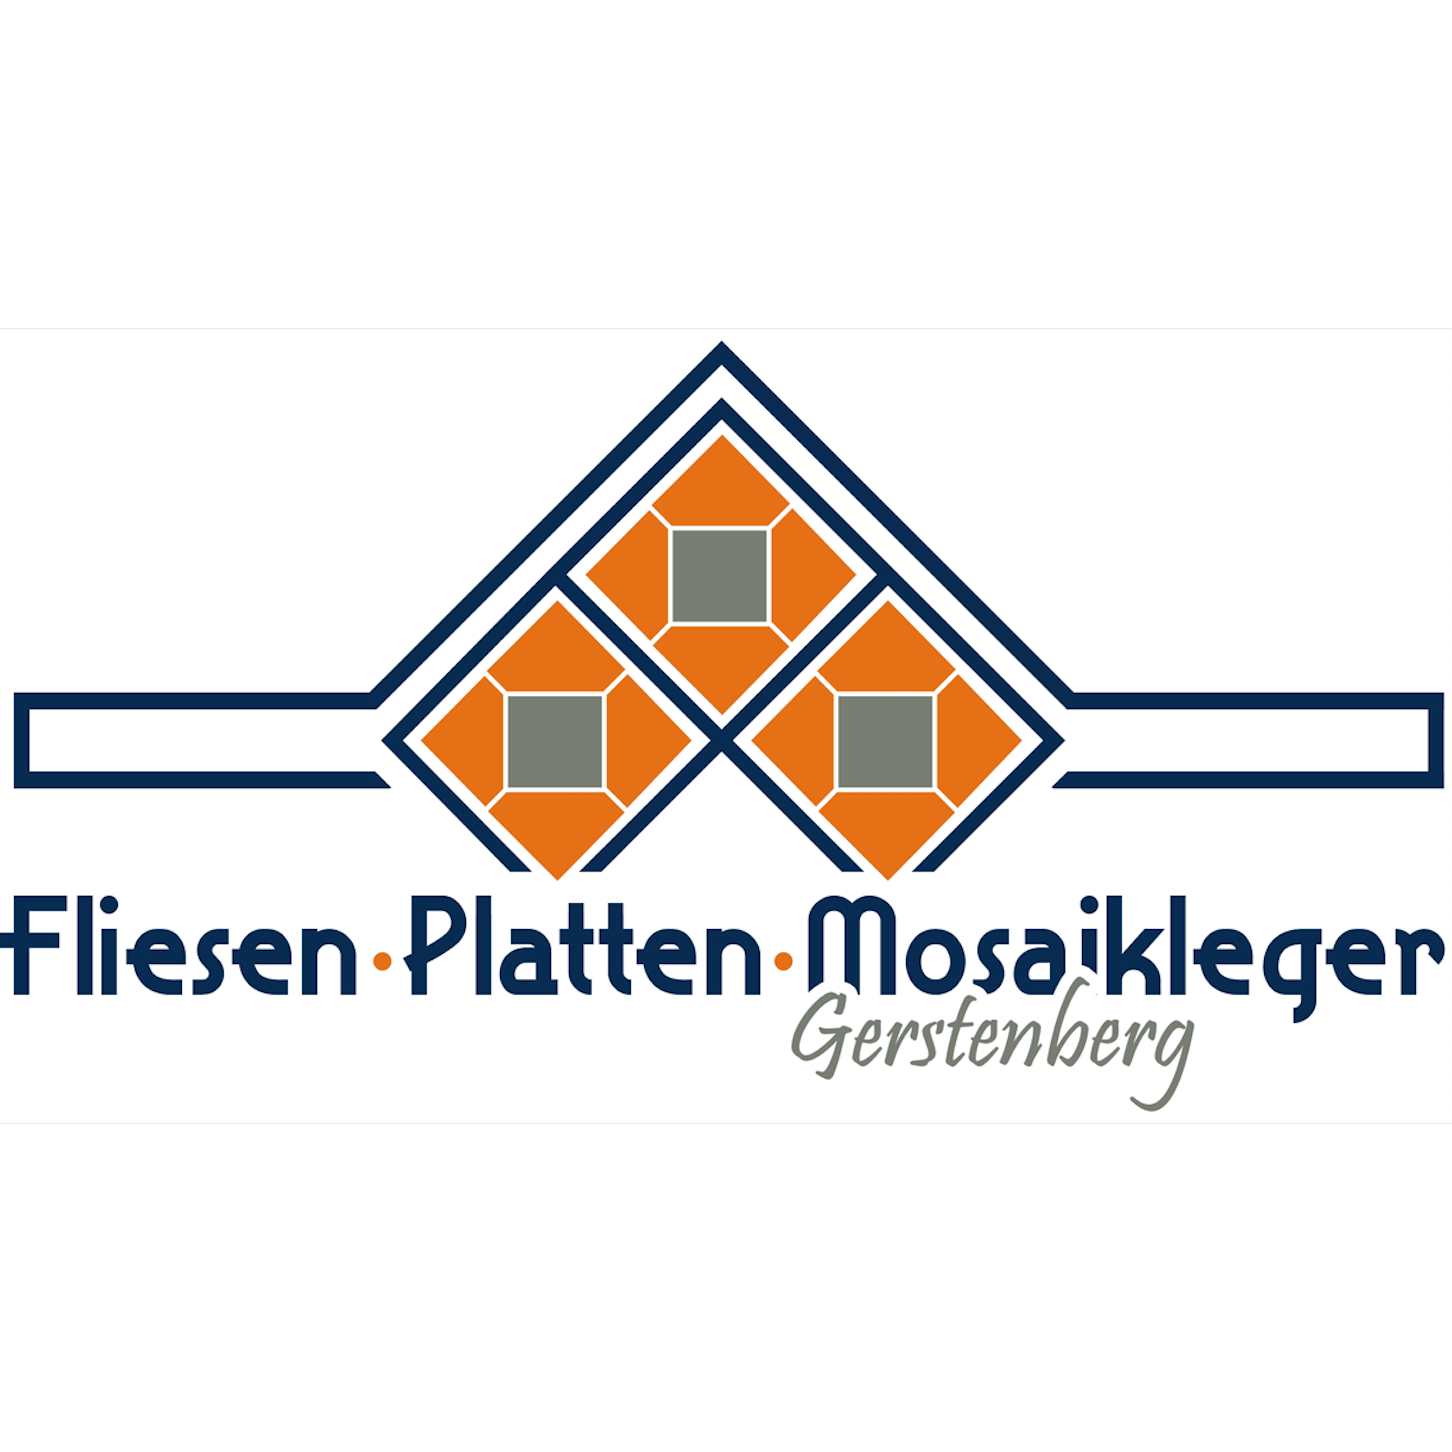 Olaf Gerstenberg Fliesen-, Platten- Mosaikleger in Langendorf Gemeinde Lüssow bei Stralsund - Logo